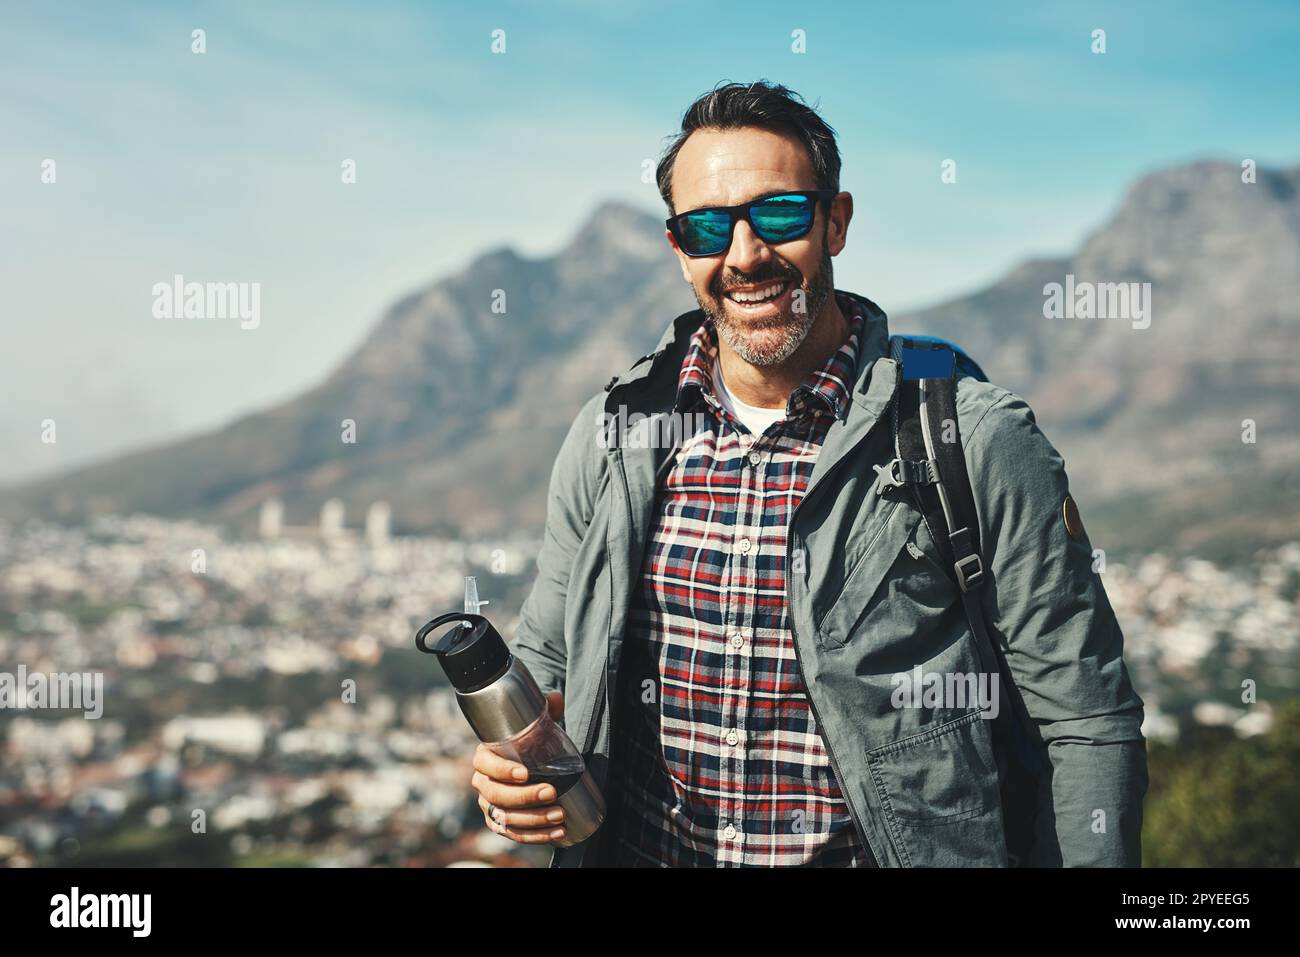 Che viaggio meraviglioso è stato. Ritratto di un uomo di mezza età che sorride di fronte a un paesaggio montano. Foto Stock